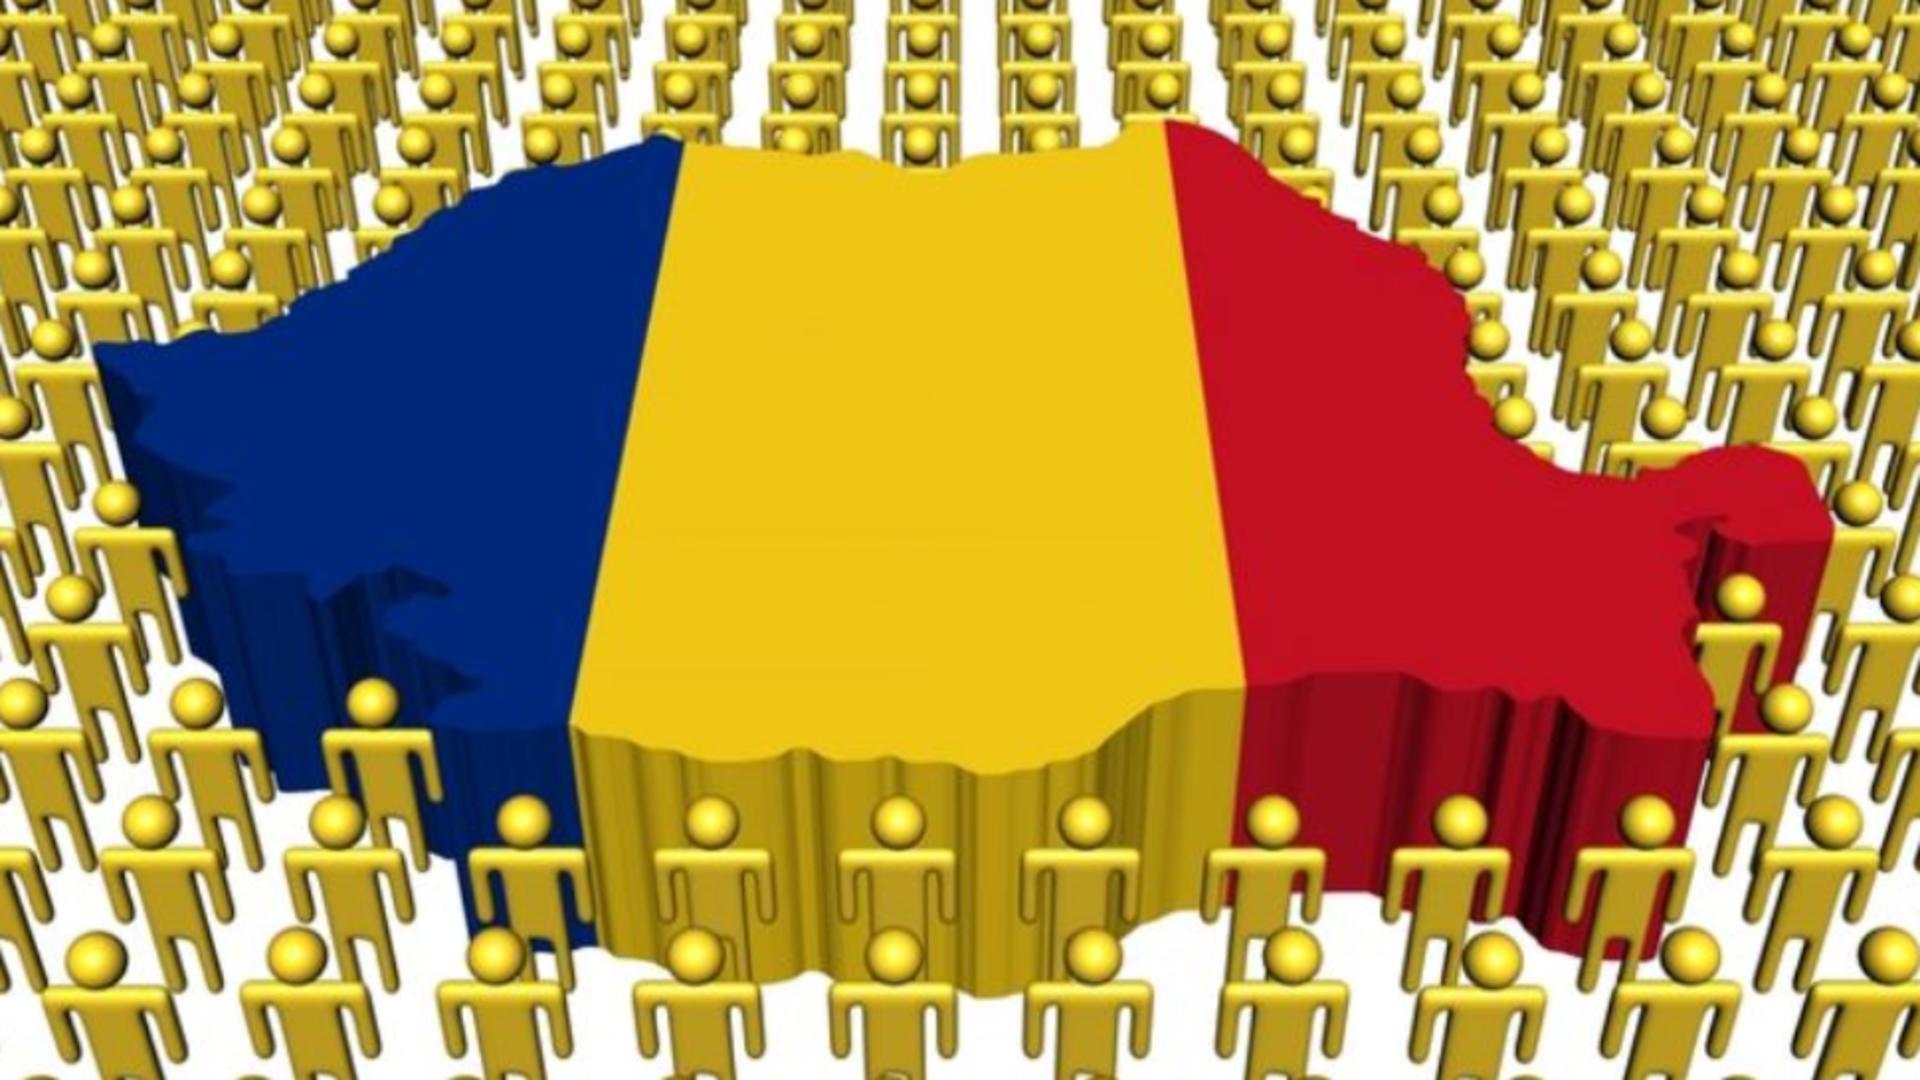 Reforma teritorială din România a început: Consorții administrative cerute de PNRR - Ce prevede Legea ce va fi promulgată de Iohannis